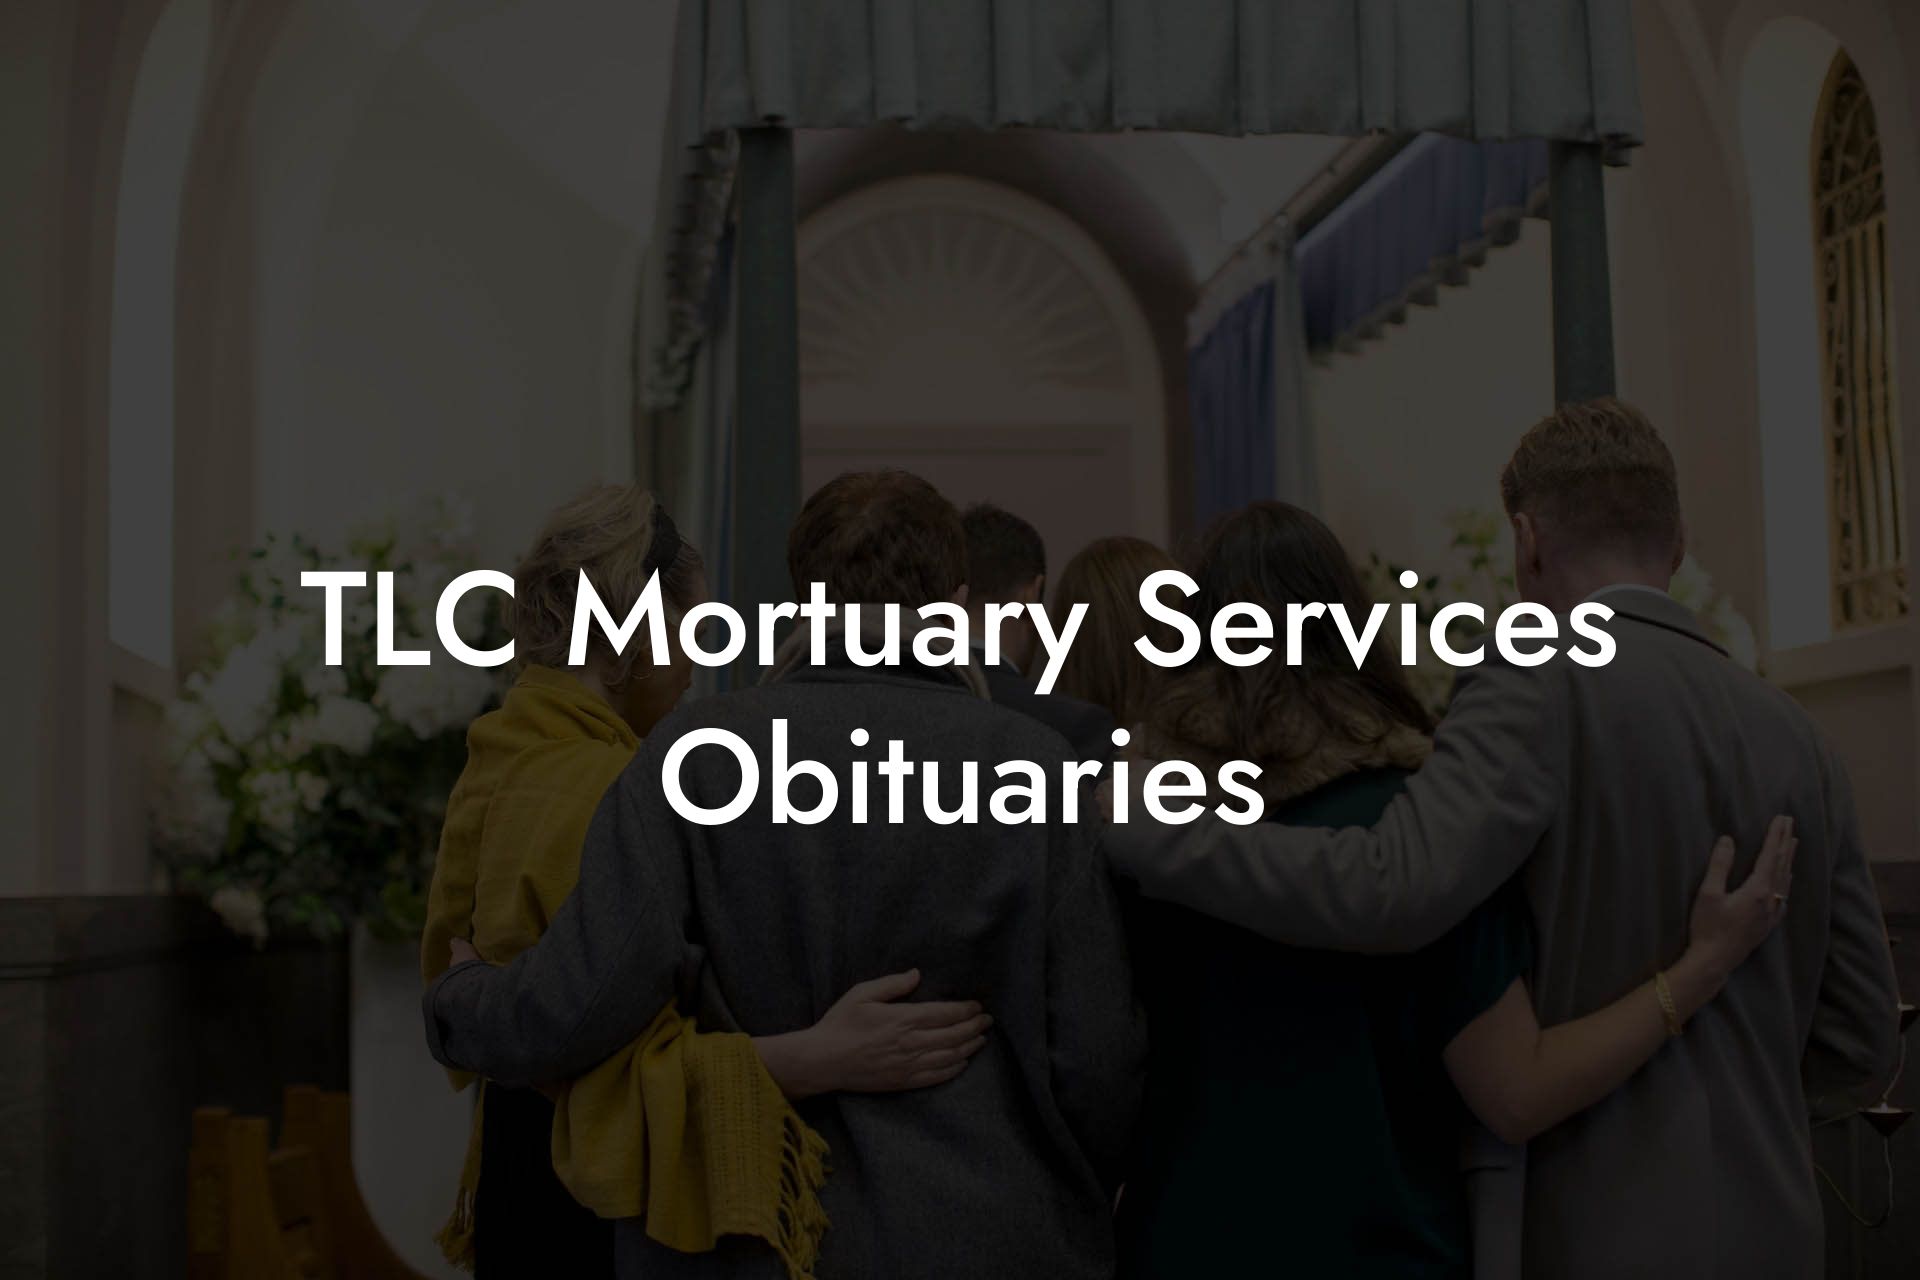 TLC Mortuary Services Obituaries